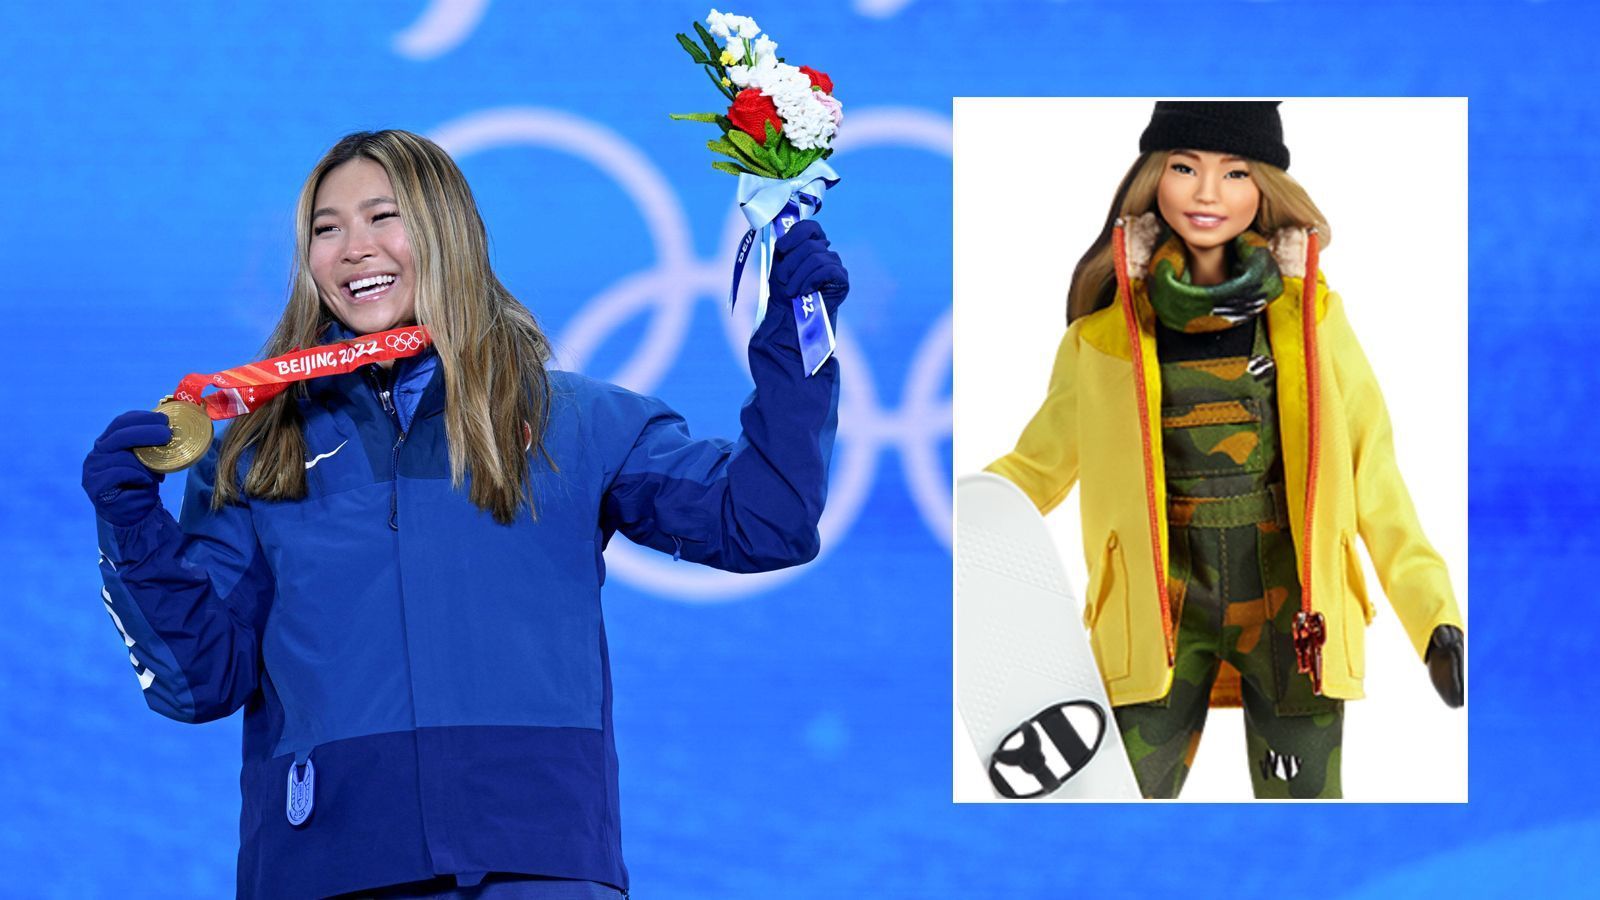 
                <strong>Chloe Kim gibt es auch als Barbie-Puppe</strong><br>
                US-Snowboarderin Chloe Kim gilt als Topstar ihrer Disziplin. In Peking holte die 21-Jährige in der Halfpipe ihre zweite Goldmedaille bei Olympischen Spielen nach ihrem Sieg 2018 in Pyeongchang. In ihrer Heimat ist die Sportlerin nicht nur wegen ihrer Erfolge populär, sondern auch als Werbefigur. Nach dem Olympiasieg 2018 wurde zu Kims Ehren eine Barbie-Puppe auf den Markt gebracht. "Ich stehe hinter Barbies Message, den Mädchen zu zeigen, dass sie alles sein können. Ich möchte, dass sie wissen, dass sie gleichzeitig athletisch und mädchenhaft sein können", sagte Kim damals zur Markeinführung ihrer Barbie-Puppe, die im Rahmen der "Shero"-Aktion zu Ehren inspirierender, weiblicher Vorbilder konzipiert wurde. Von anderen Stars wie Naomi Osaka hat Barbie-Hersteller "Mattel" auch eine Puppe auf den Markt gebracht. 
              